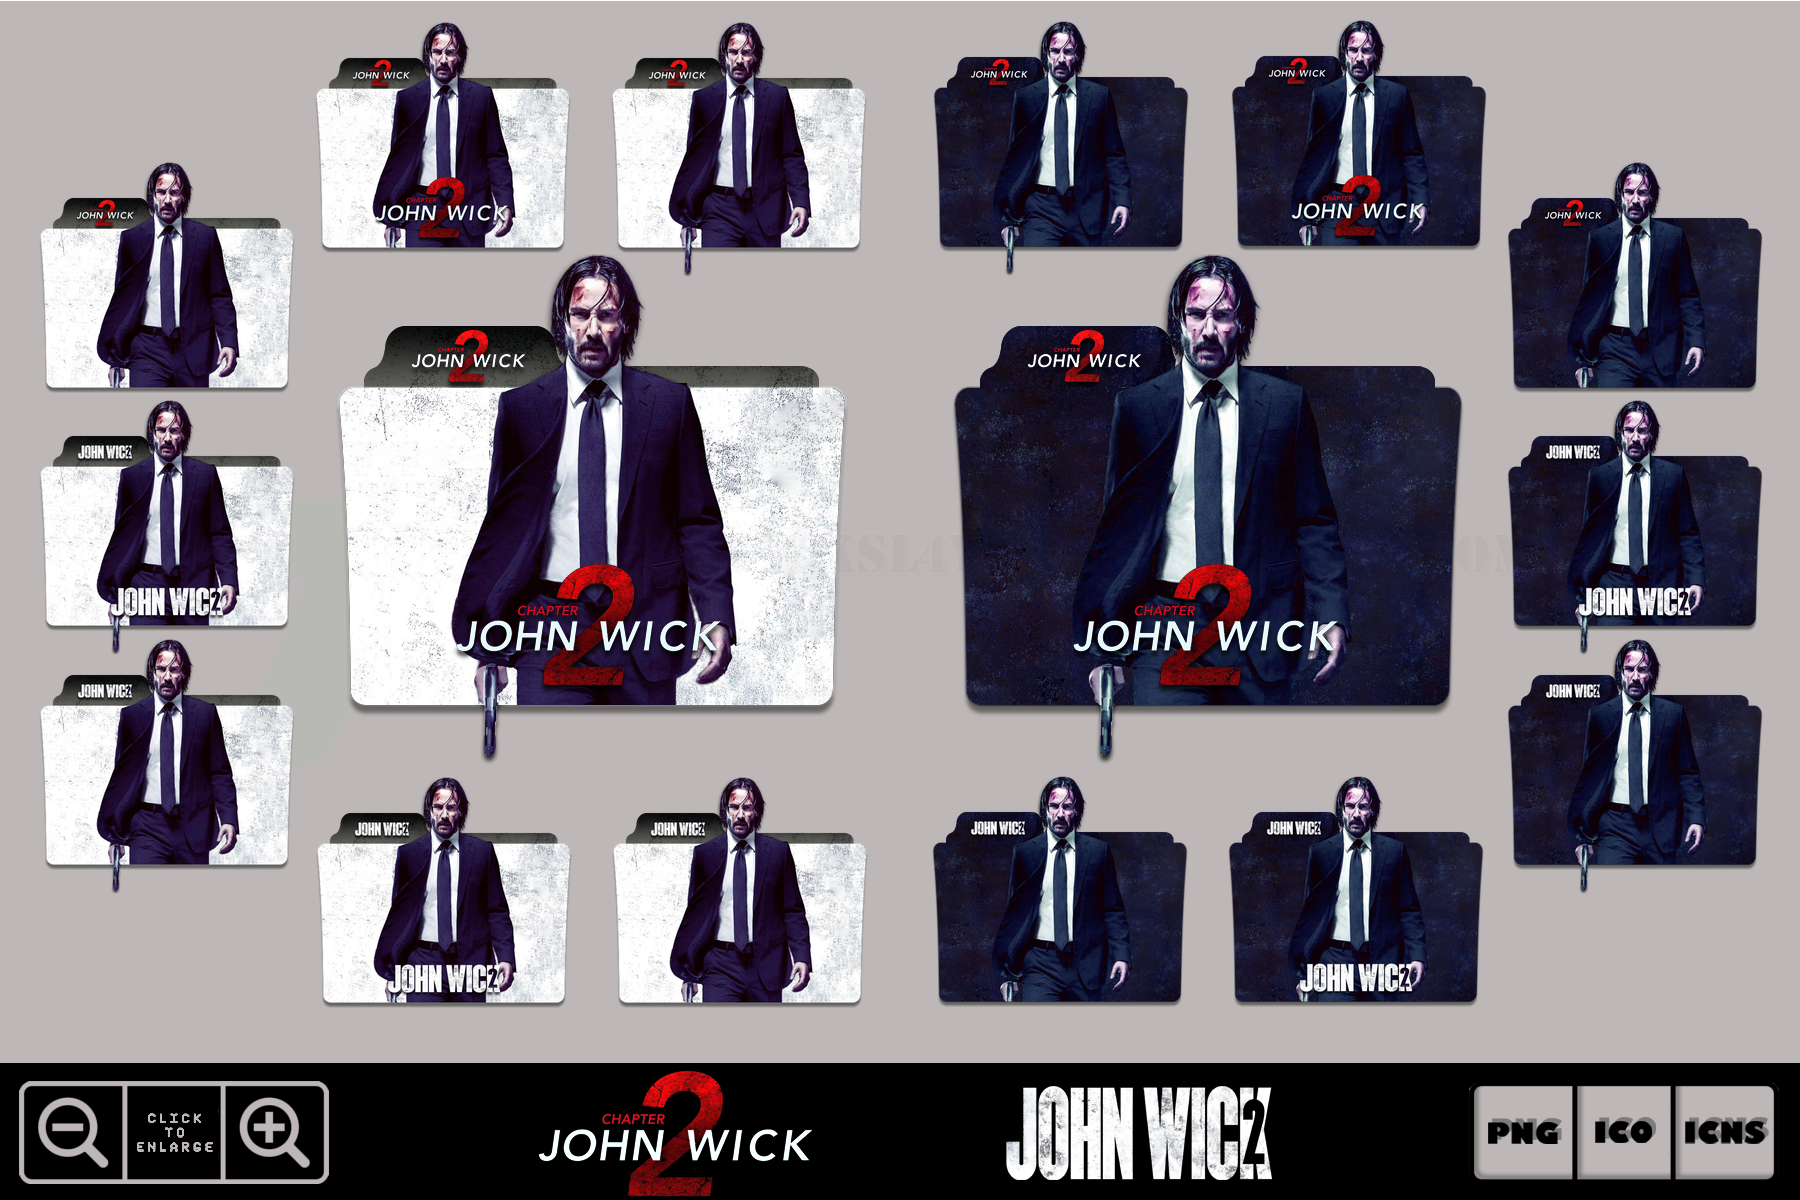 John Wick Chapter 4 (2023) Folder Icons by eslamzewail on DeviantArt